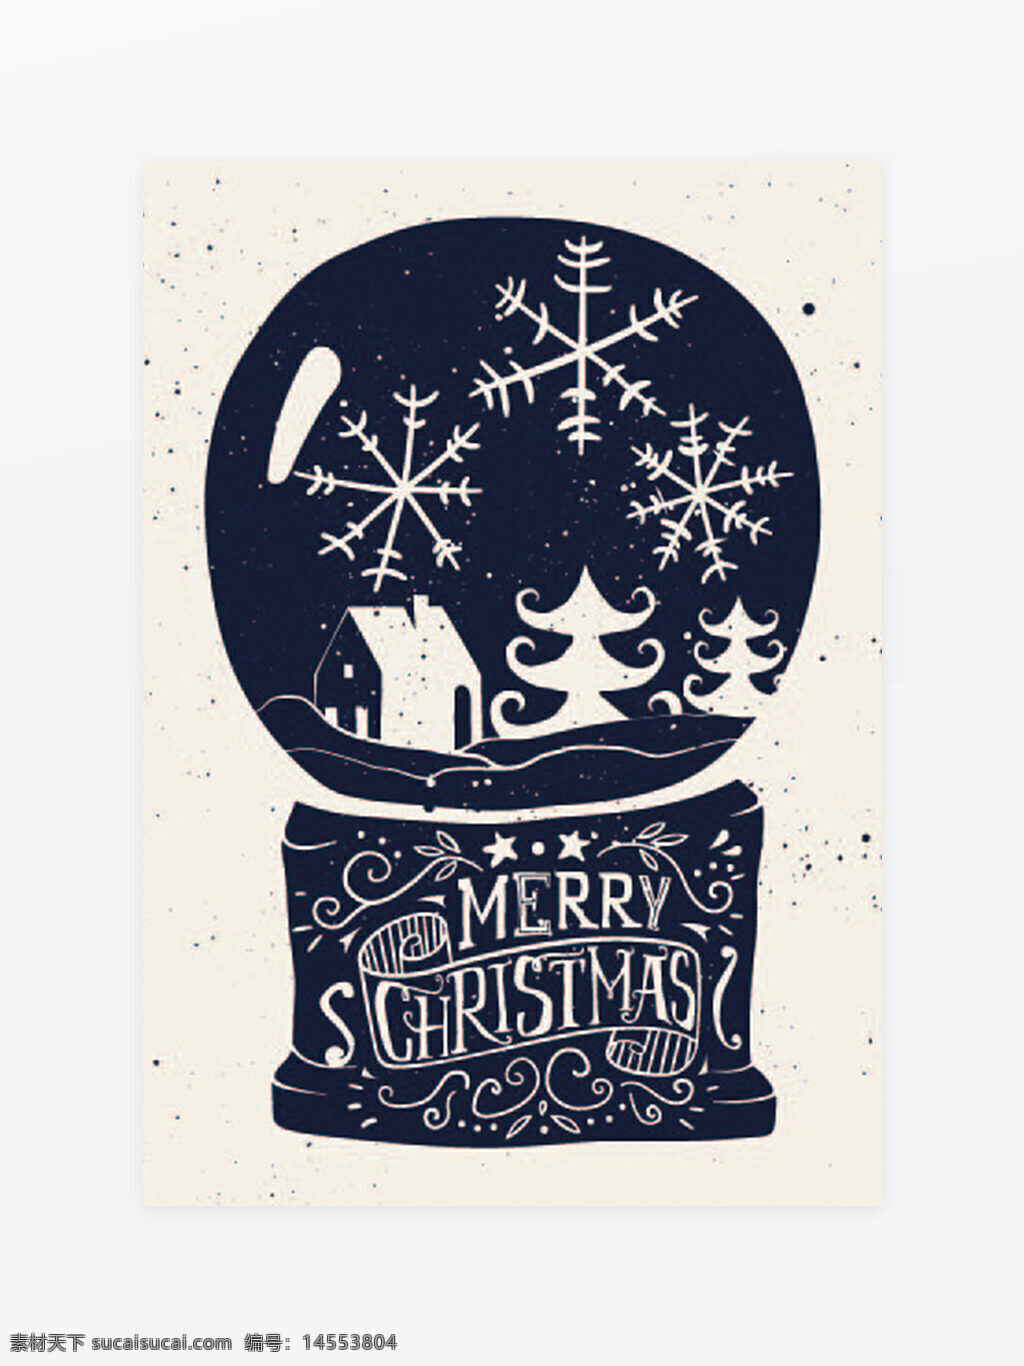 圣诞节，水晶球，元素，节日，狂欢，火爆，海报，圣诞快乐